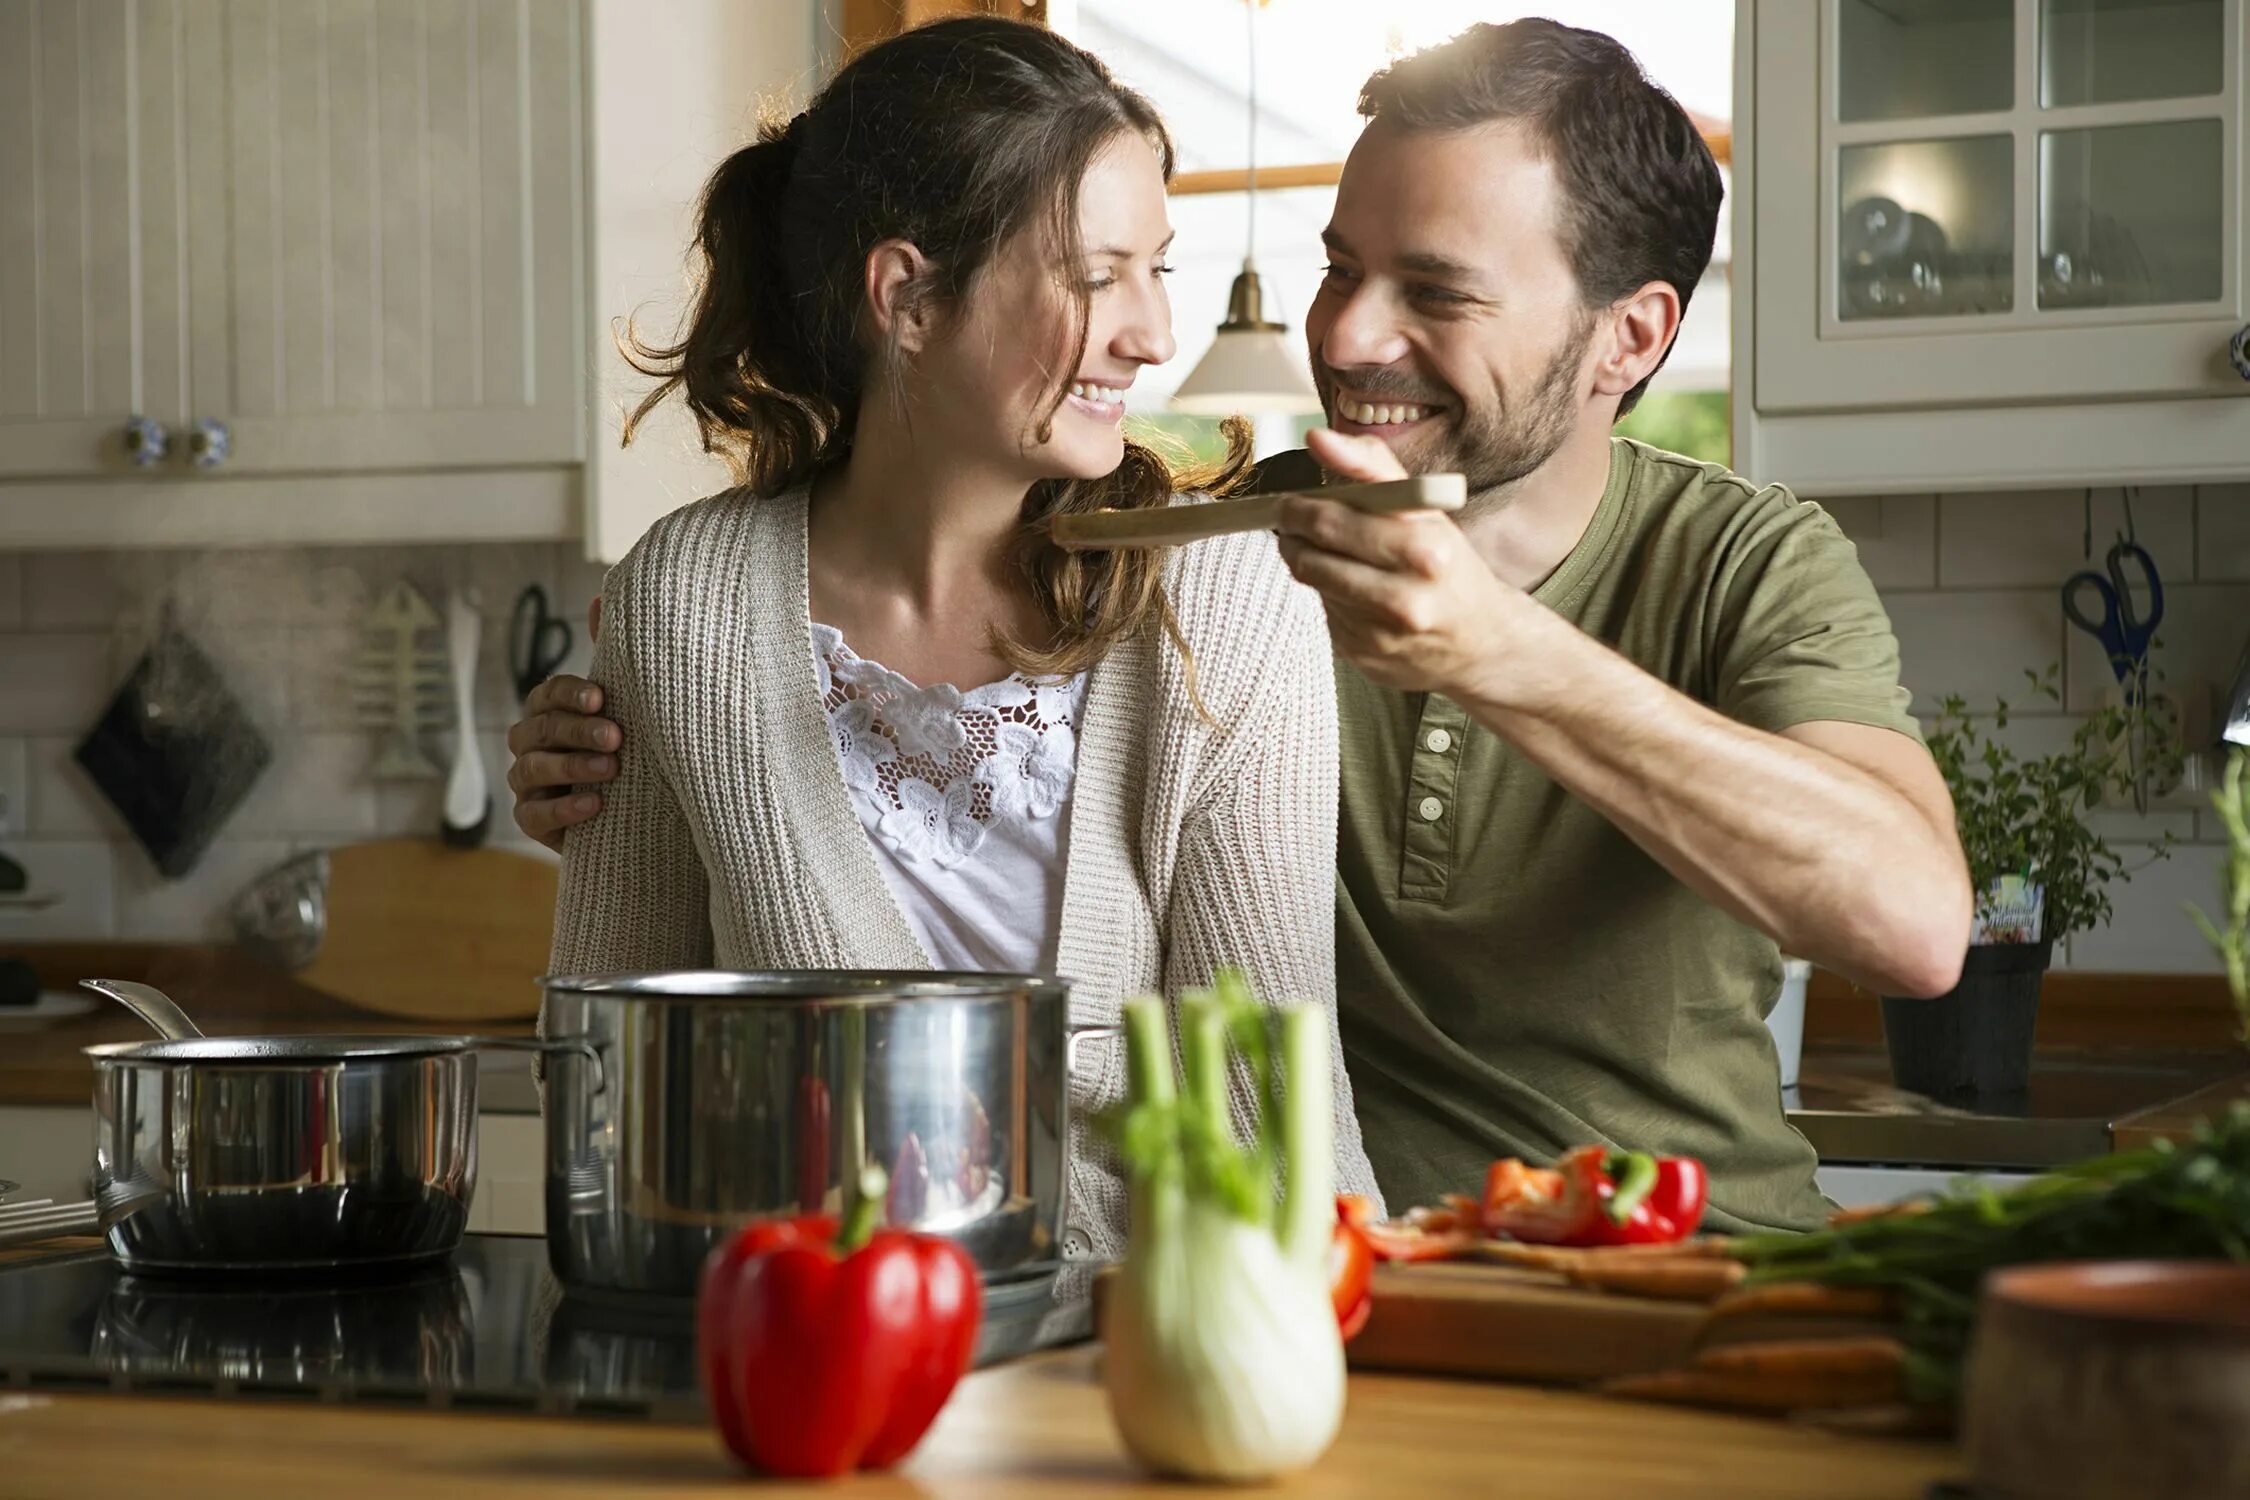 Дает мужу на кухне. Готовка на кухне. Готовим вместе. Муж и жена готовят. Семейная пара на кухне.